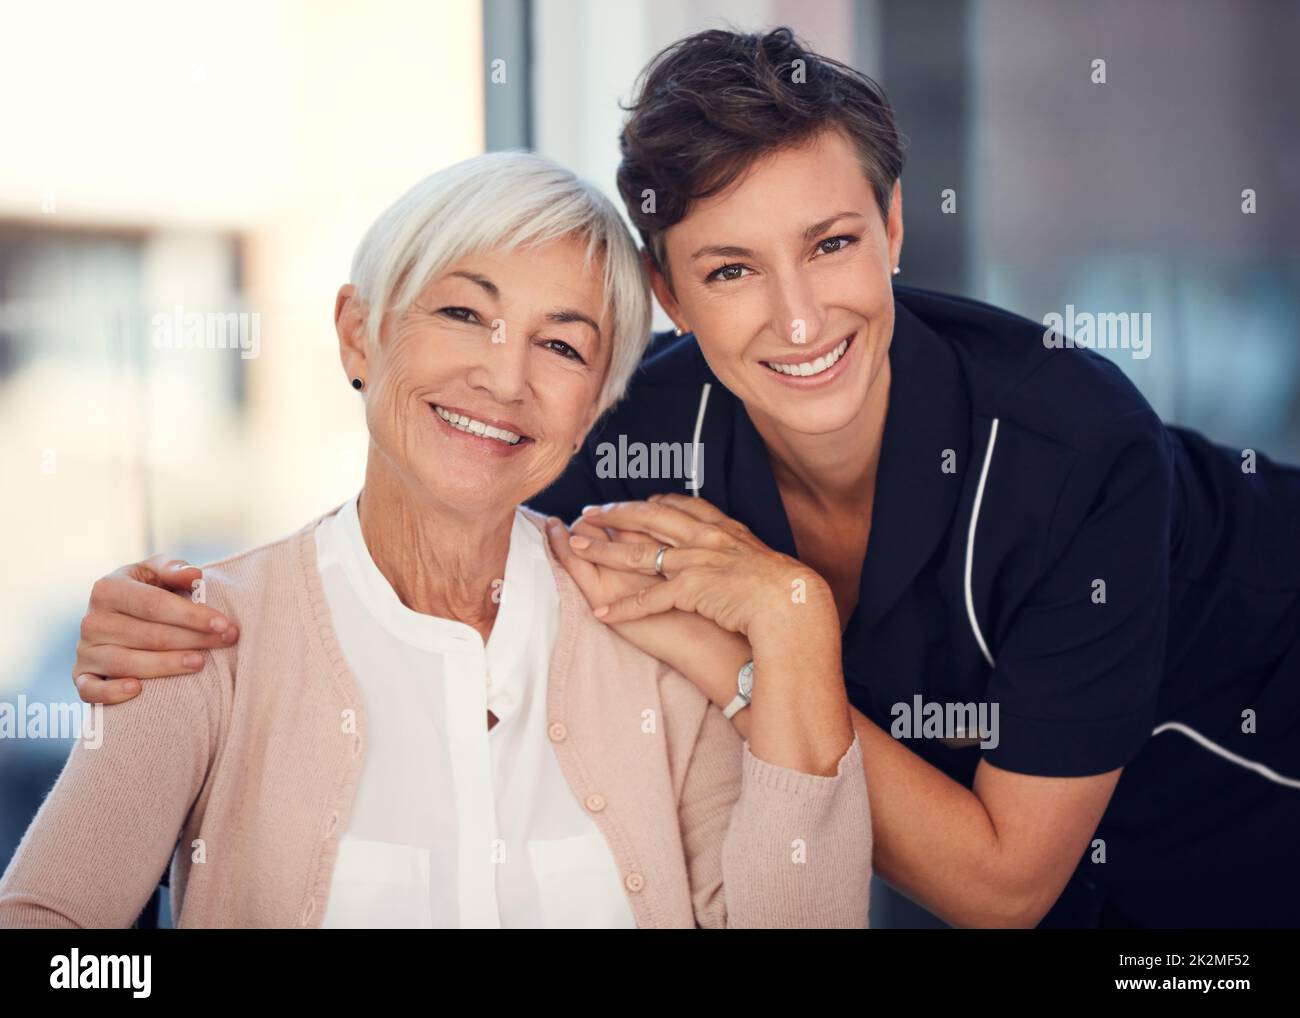 Ho un pilastro di forza in lei. Ritratto corto di una giovane infermiera che abbraccia una donna anziana seduta in una sedia a rotelle in una casa di cura. Foto Stock